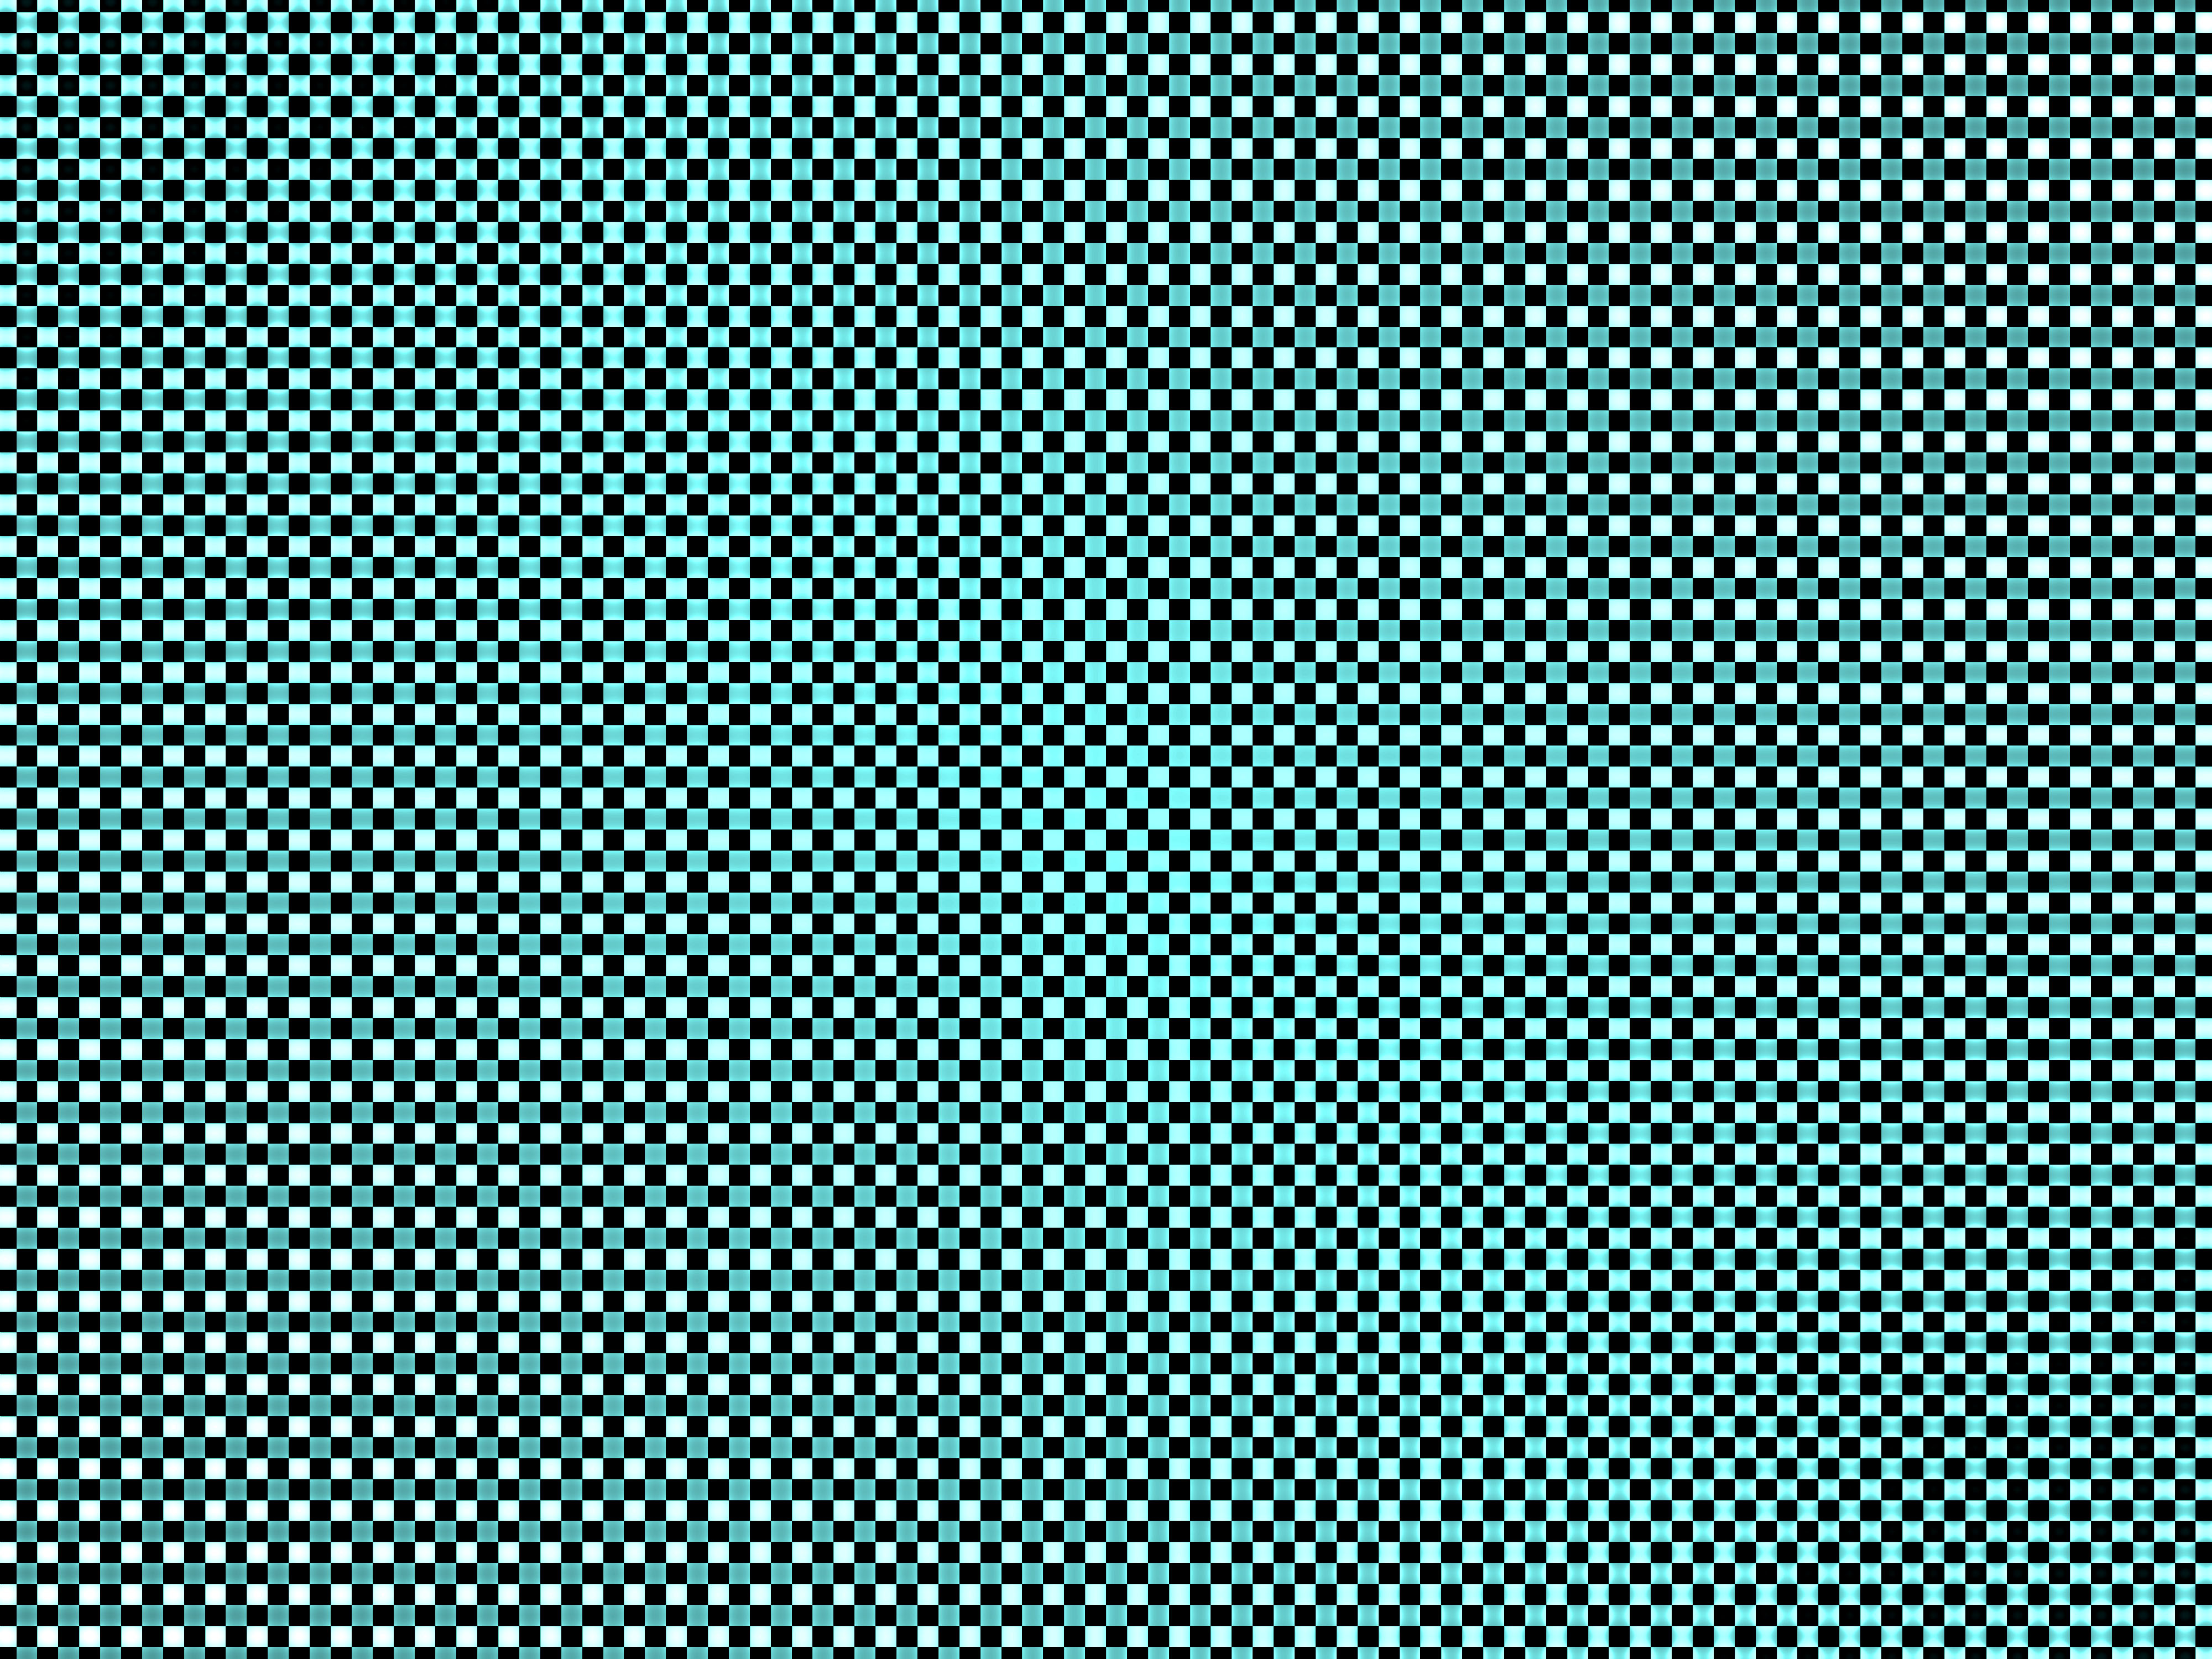 Checkerboard Geometry Square 4000x3000